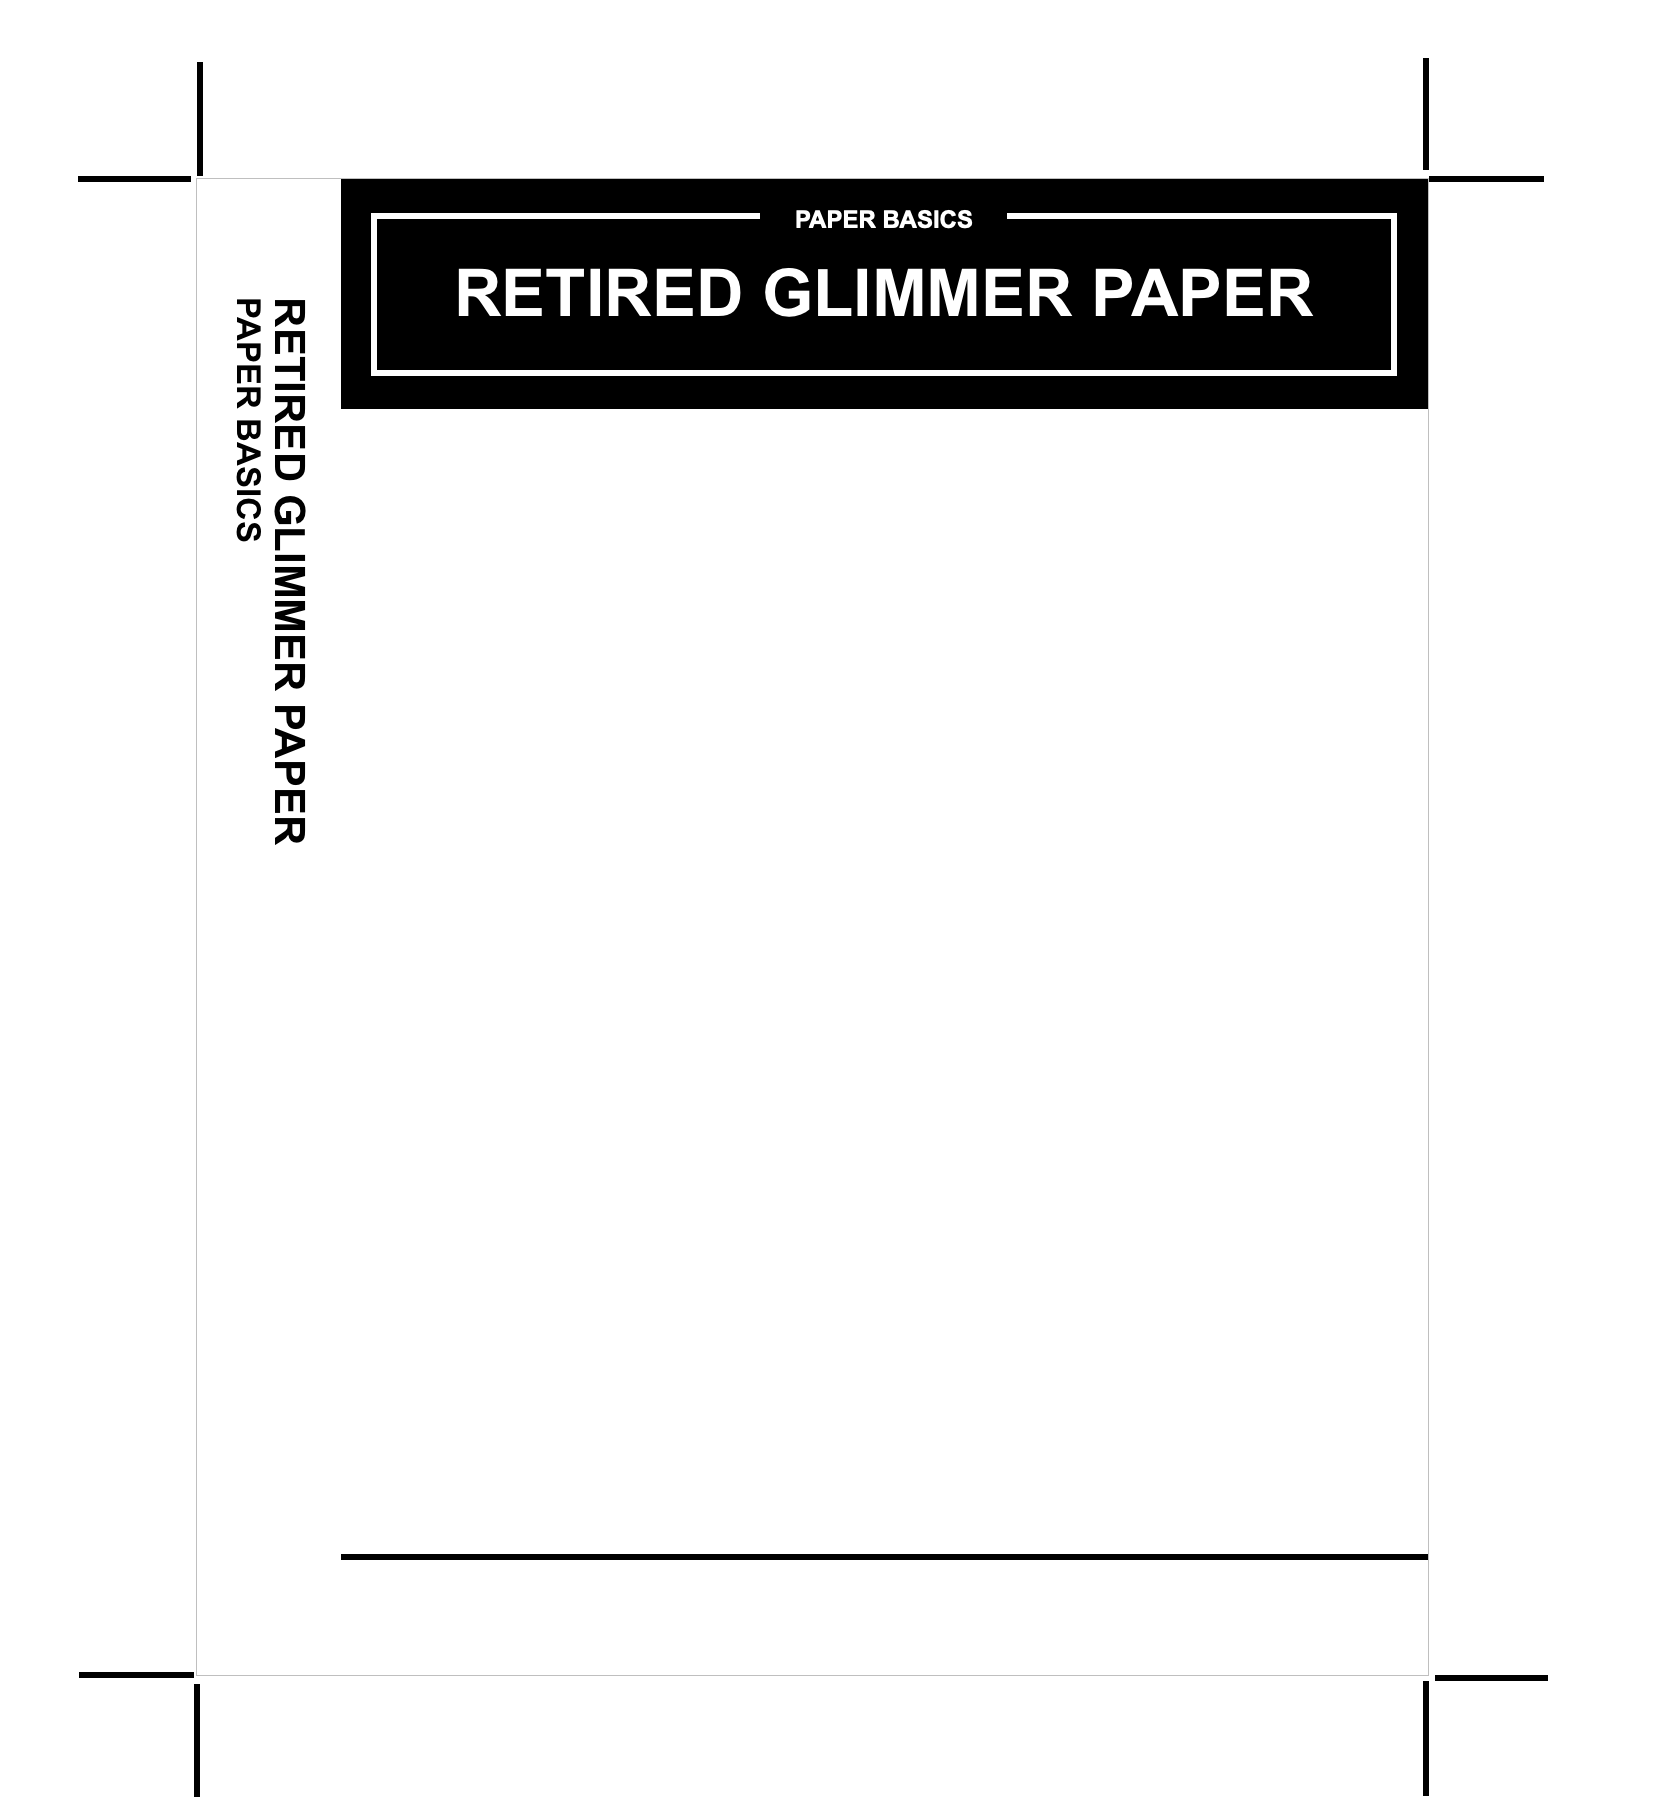 Retired Glimmer Paper Insert